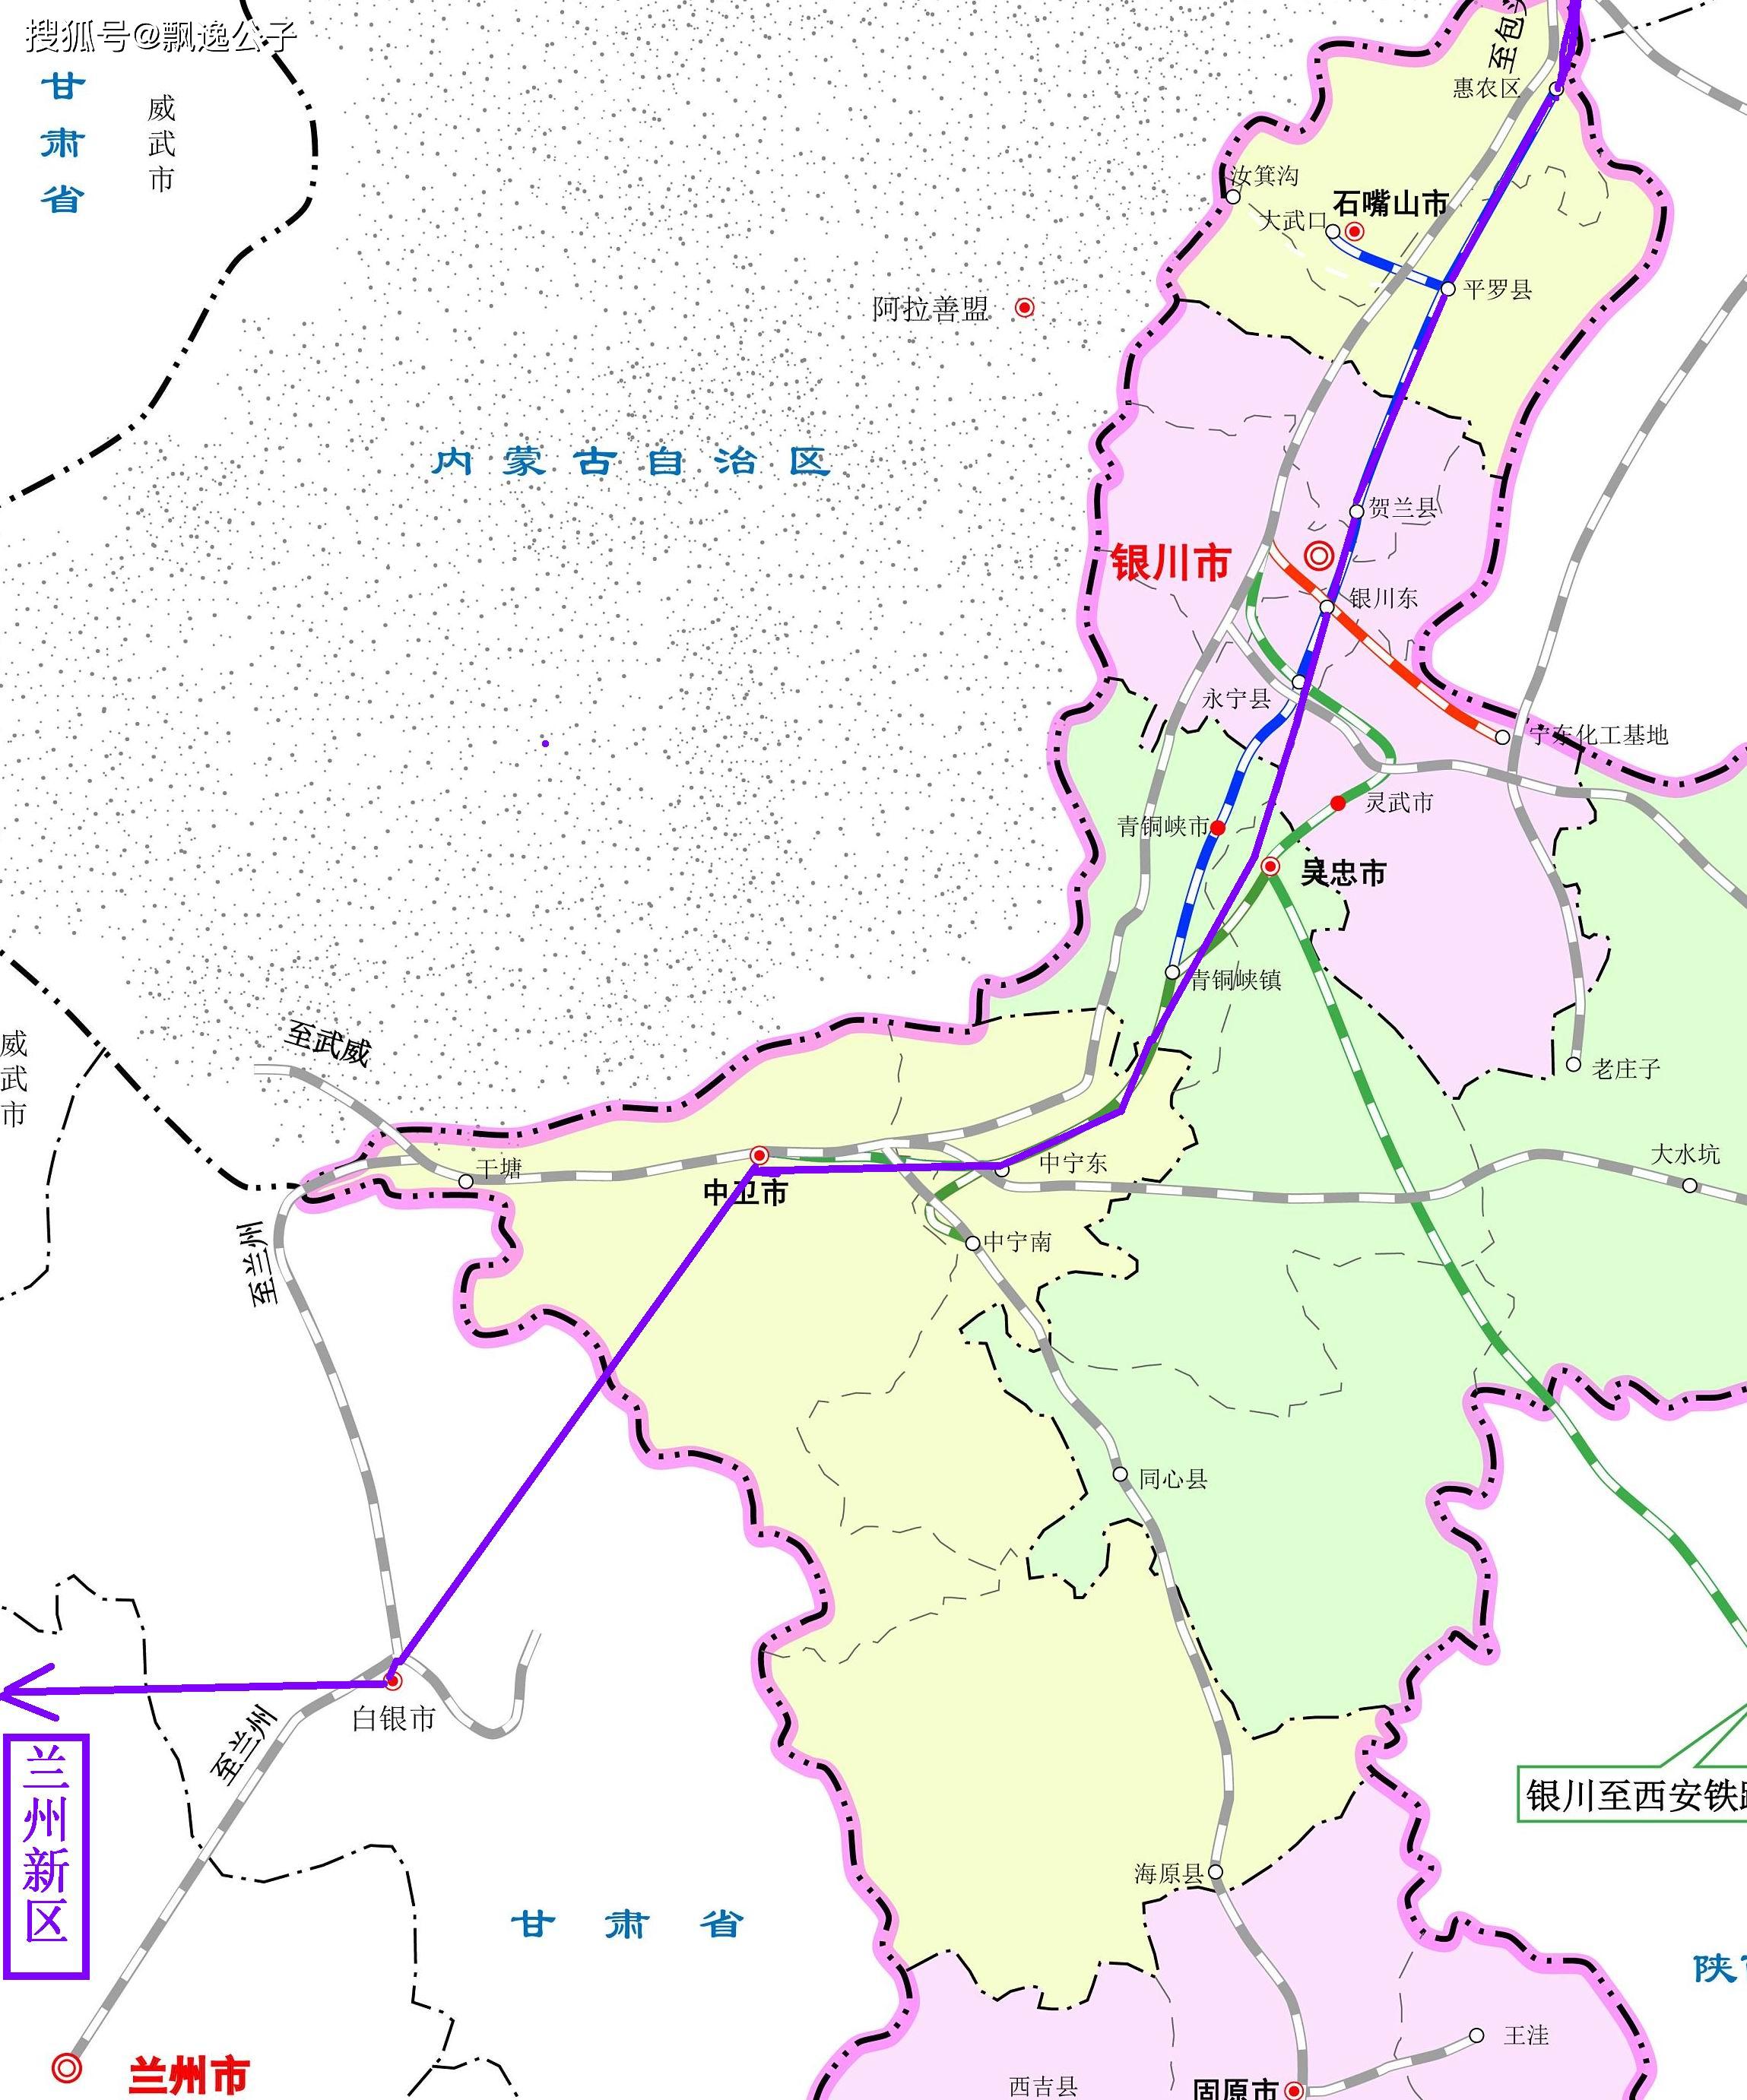 京兰铁路线路图图片